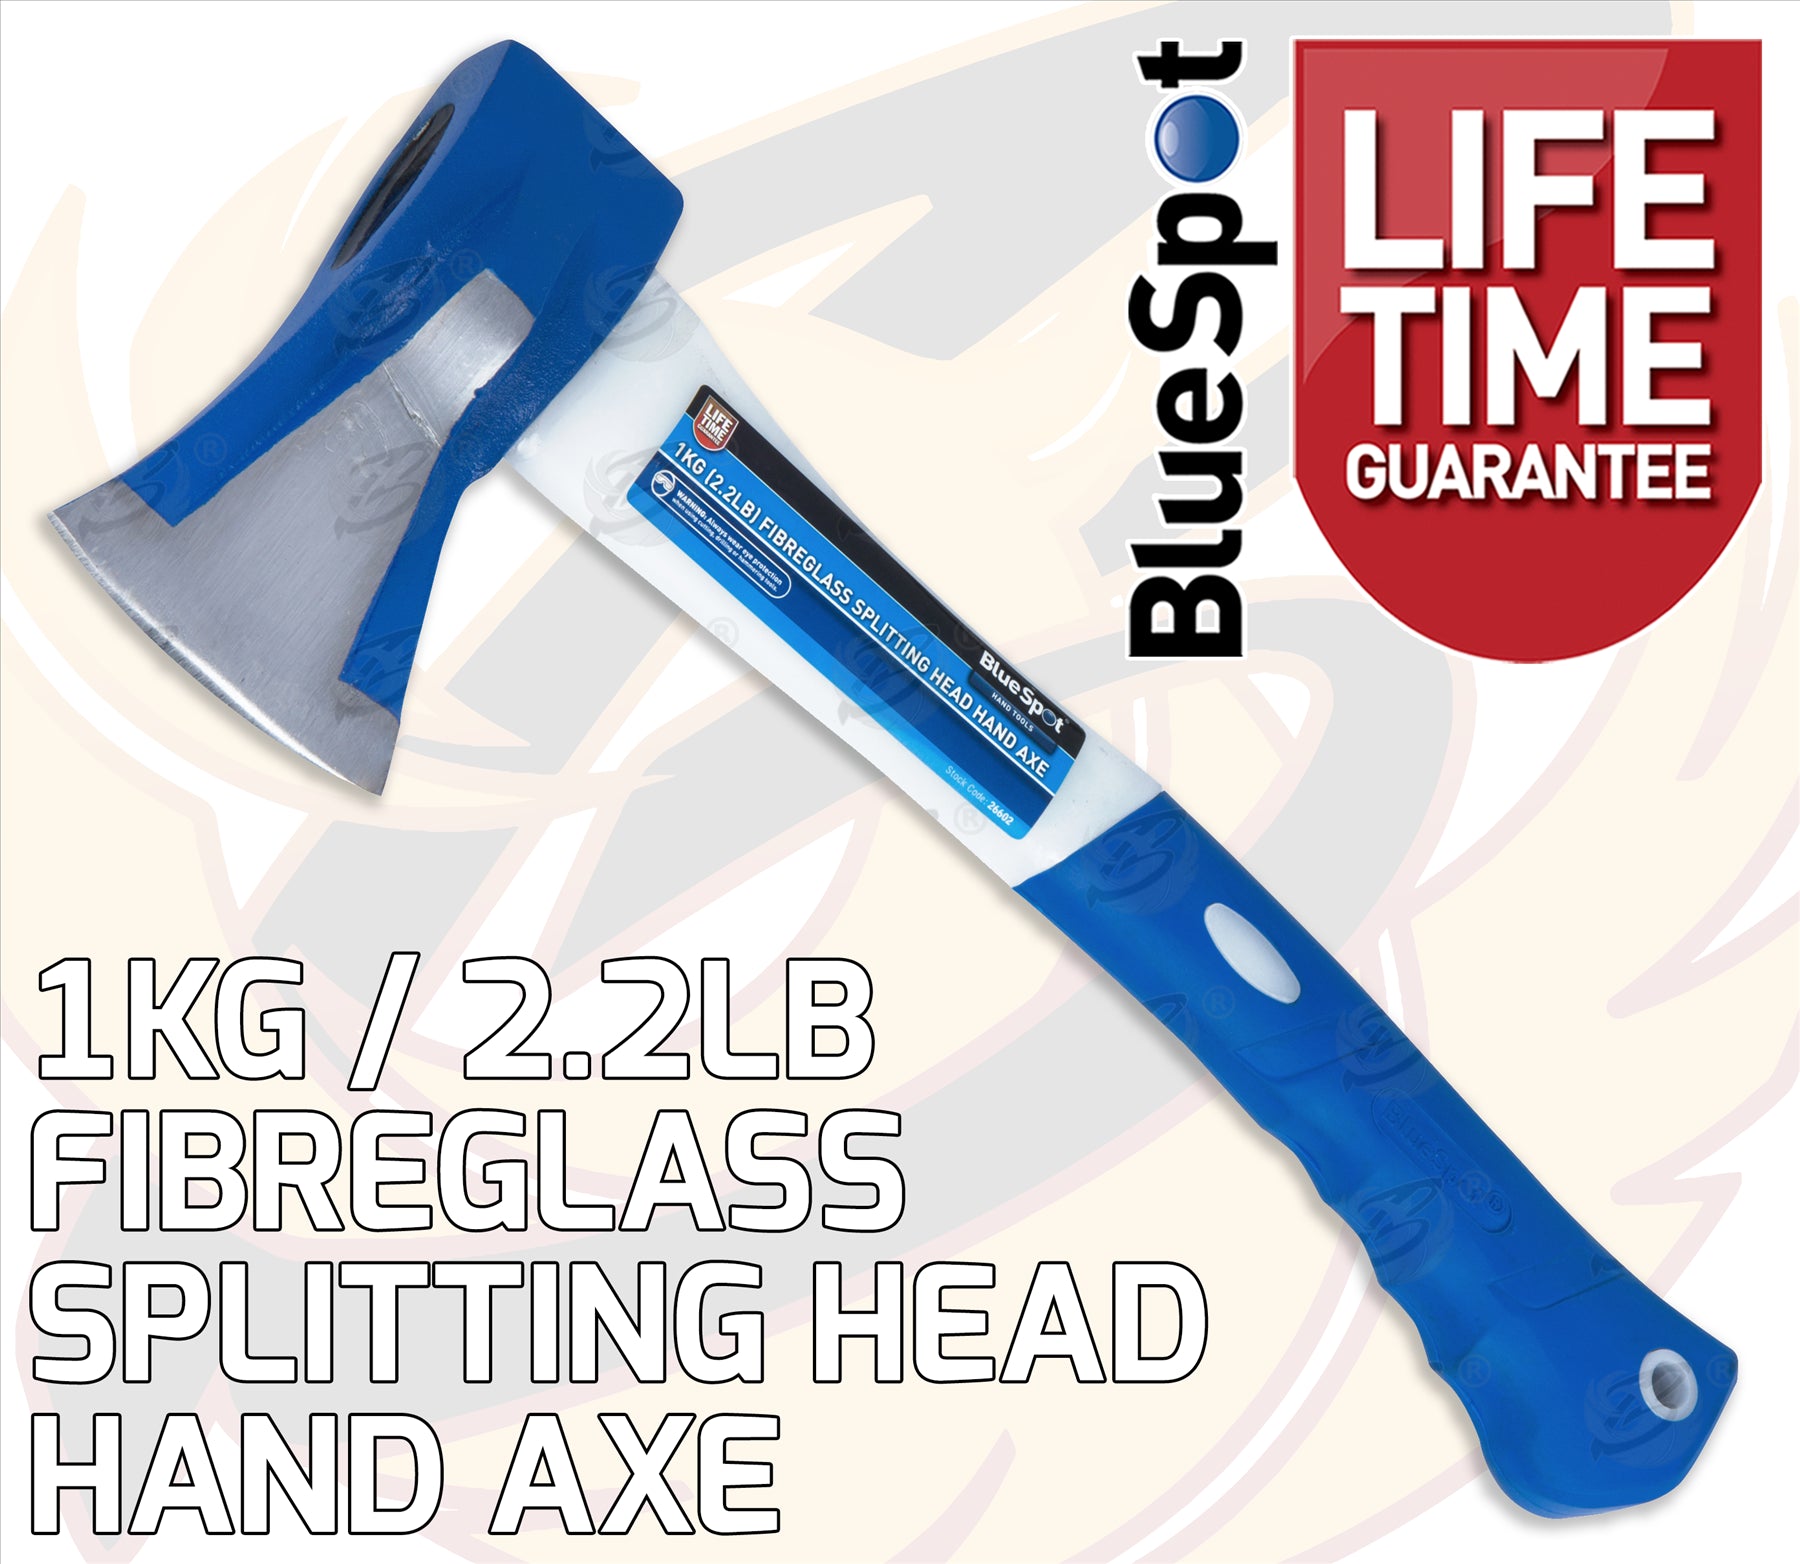 BLUESPOT 1KG ( 2.2LB ) FIBREGLASS SPLITTING HEAD HAND AXE